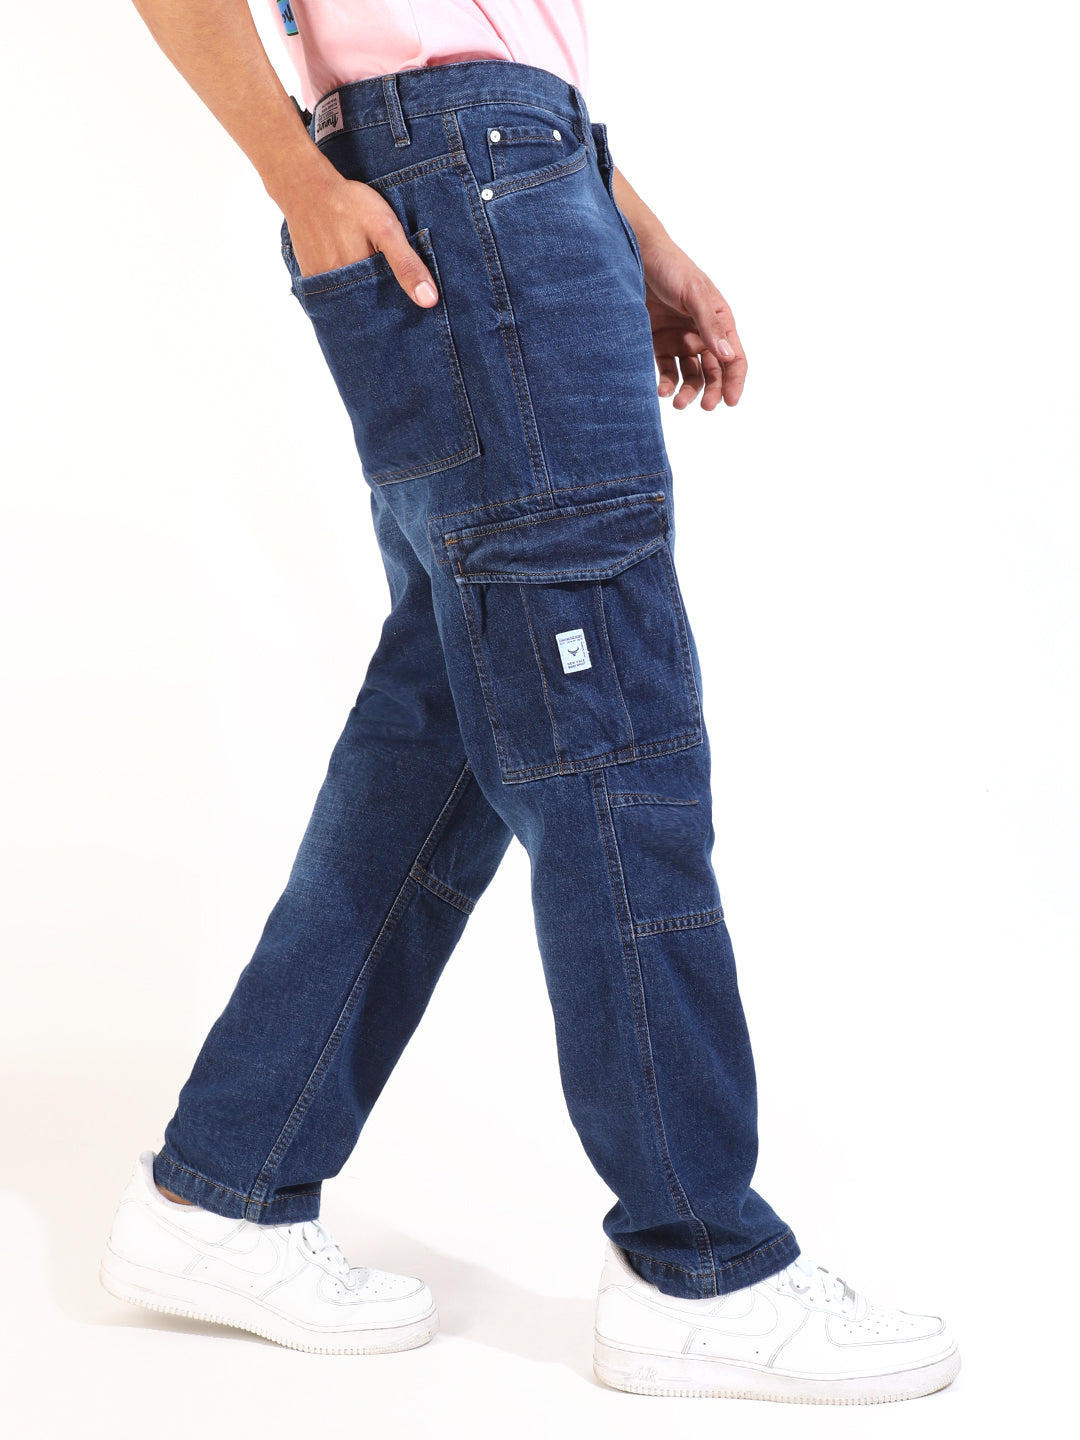 Jeans & Pants | Unique Jeans Pant For Men | Freeup